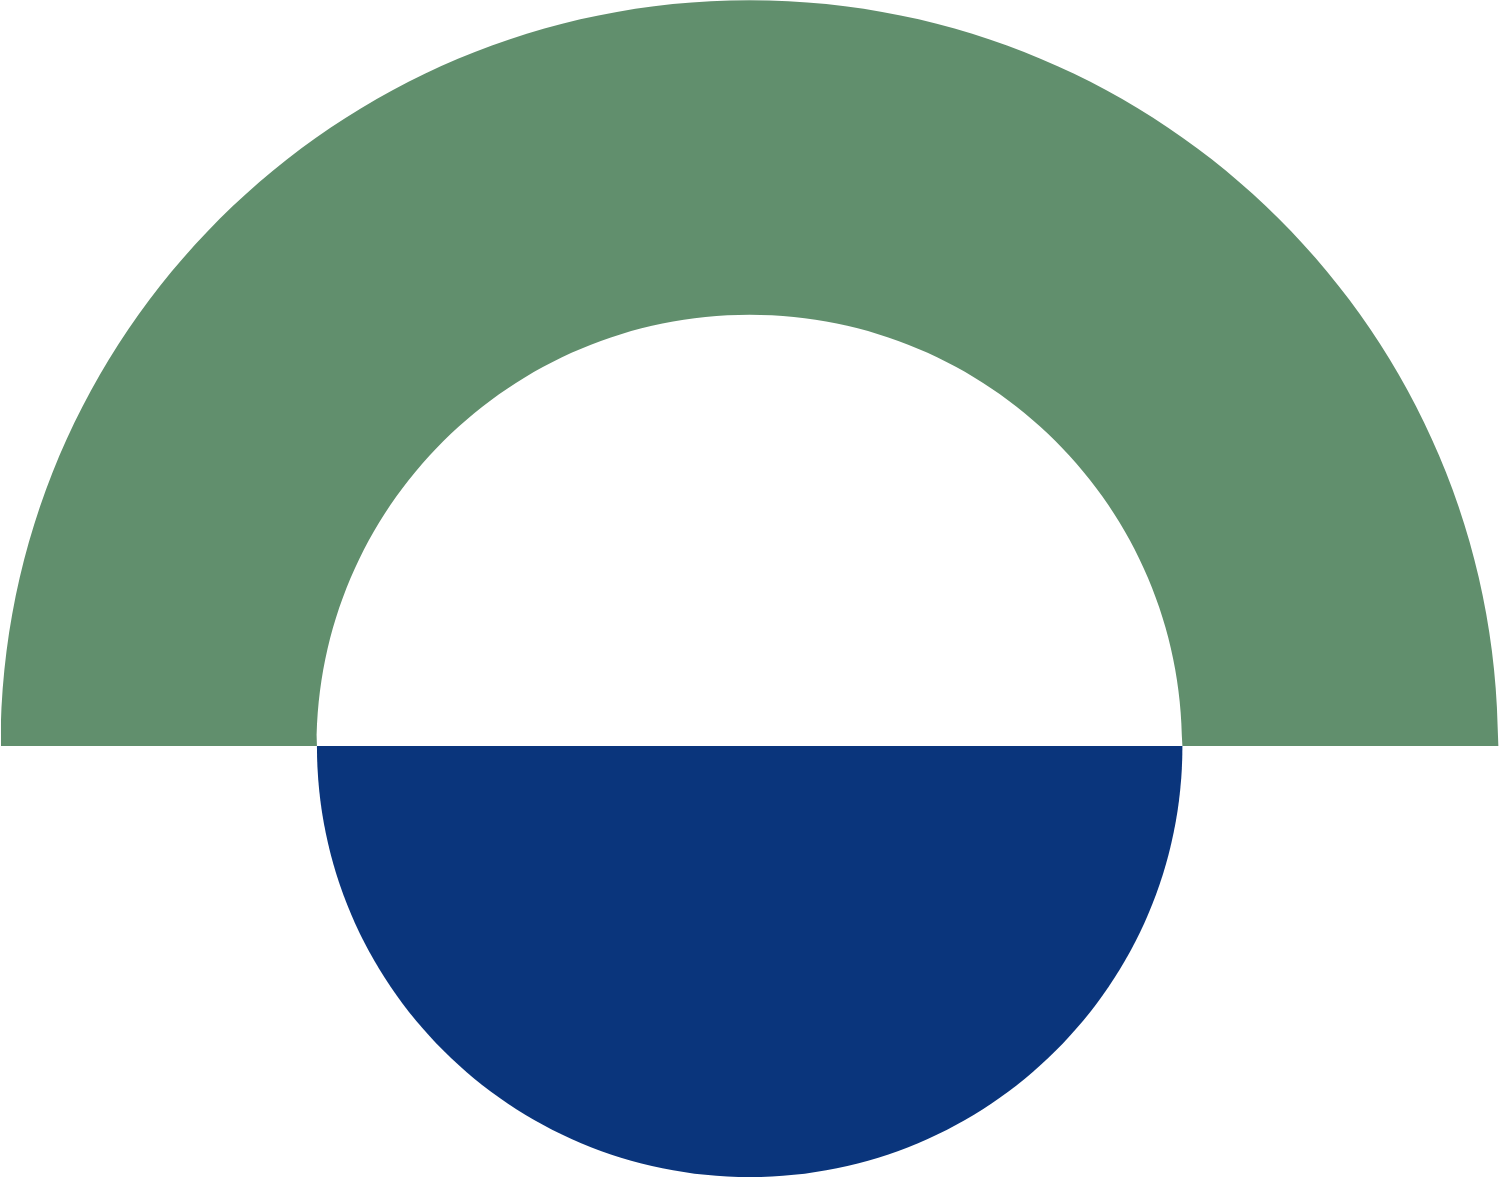 Port of Tauranga logo (transparent PNG)